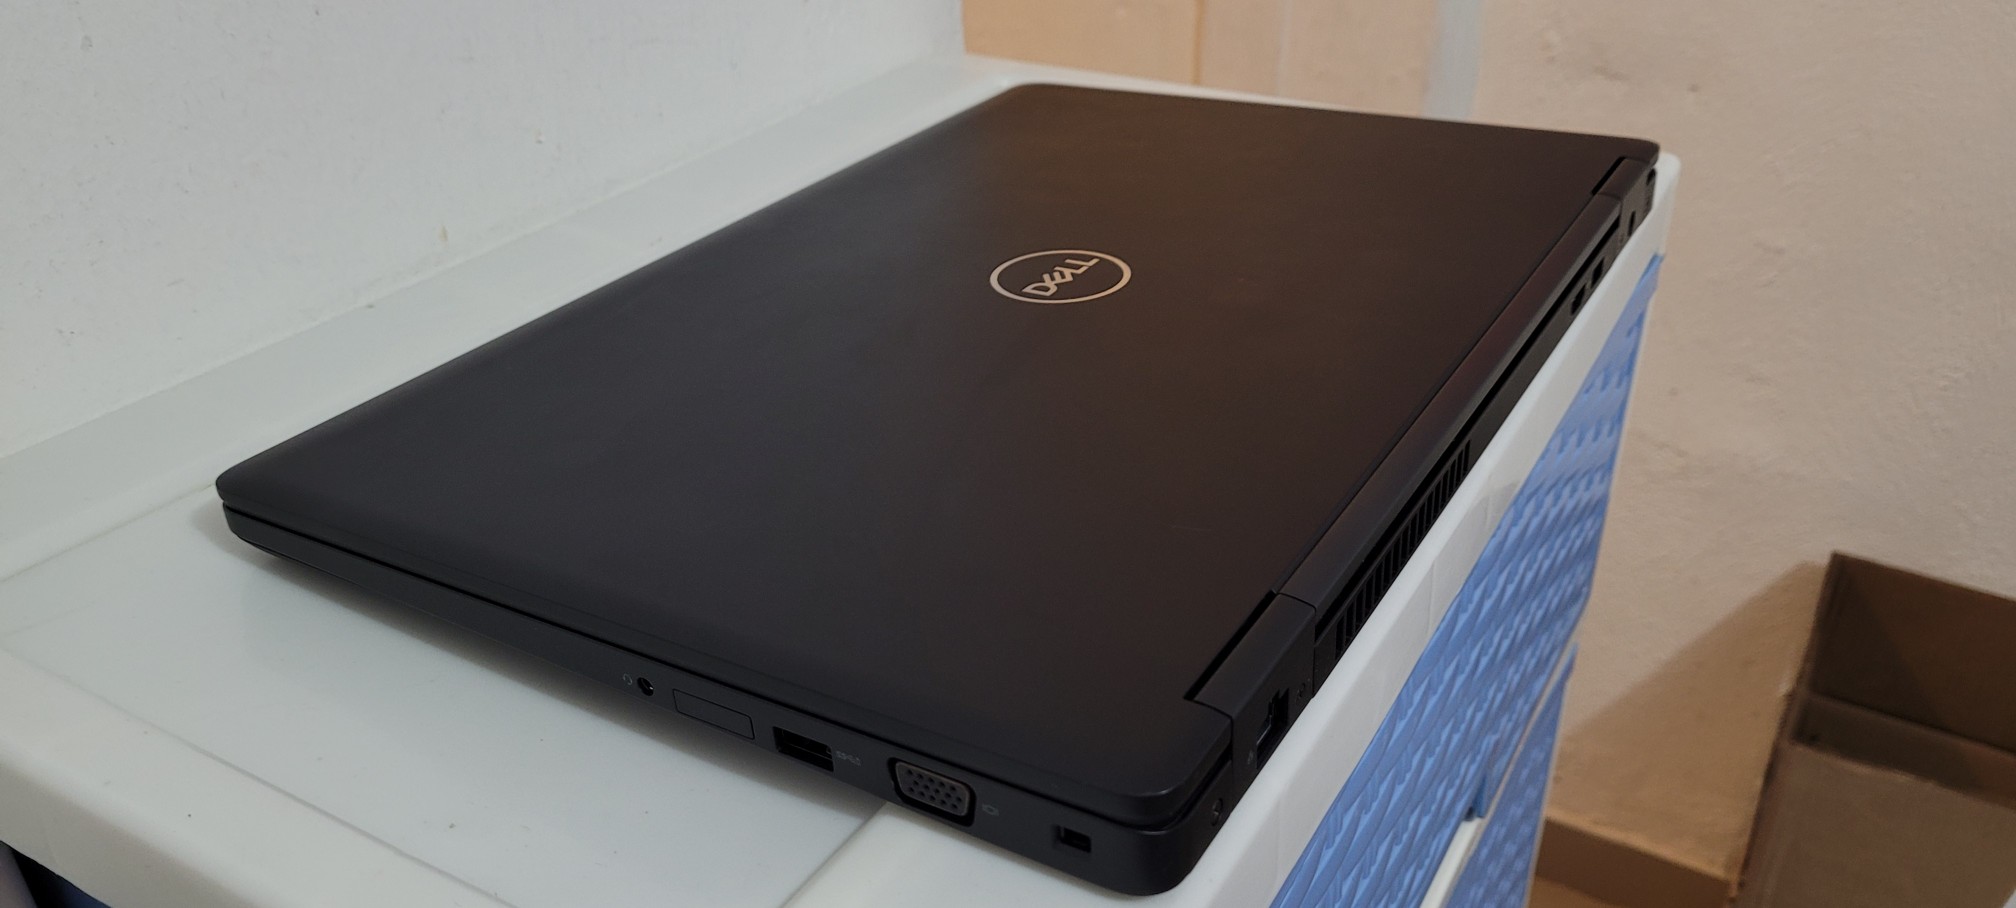 computadoras y laptops - Dell 5570 de 17 Pulg Core i7 2.7ghz Ram 16gb ddr4 Disco SSD 512GB Aty Radeon 2gb 2